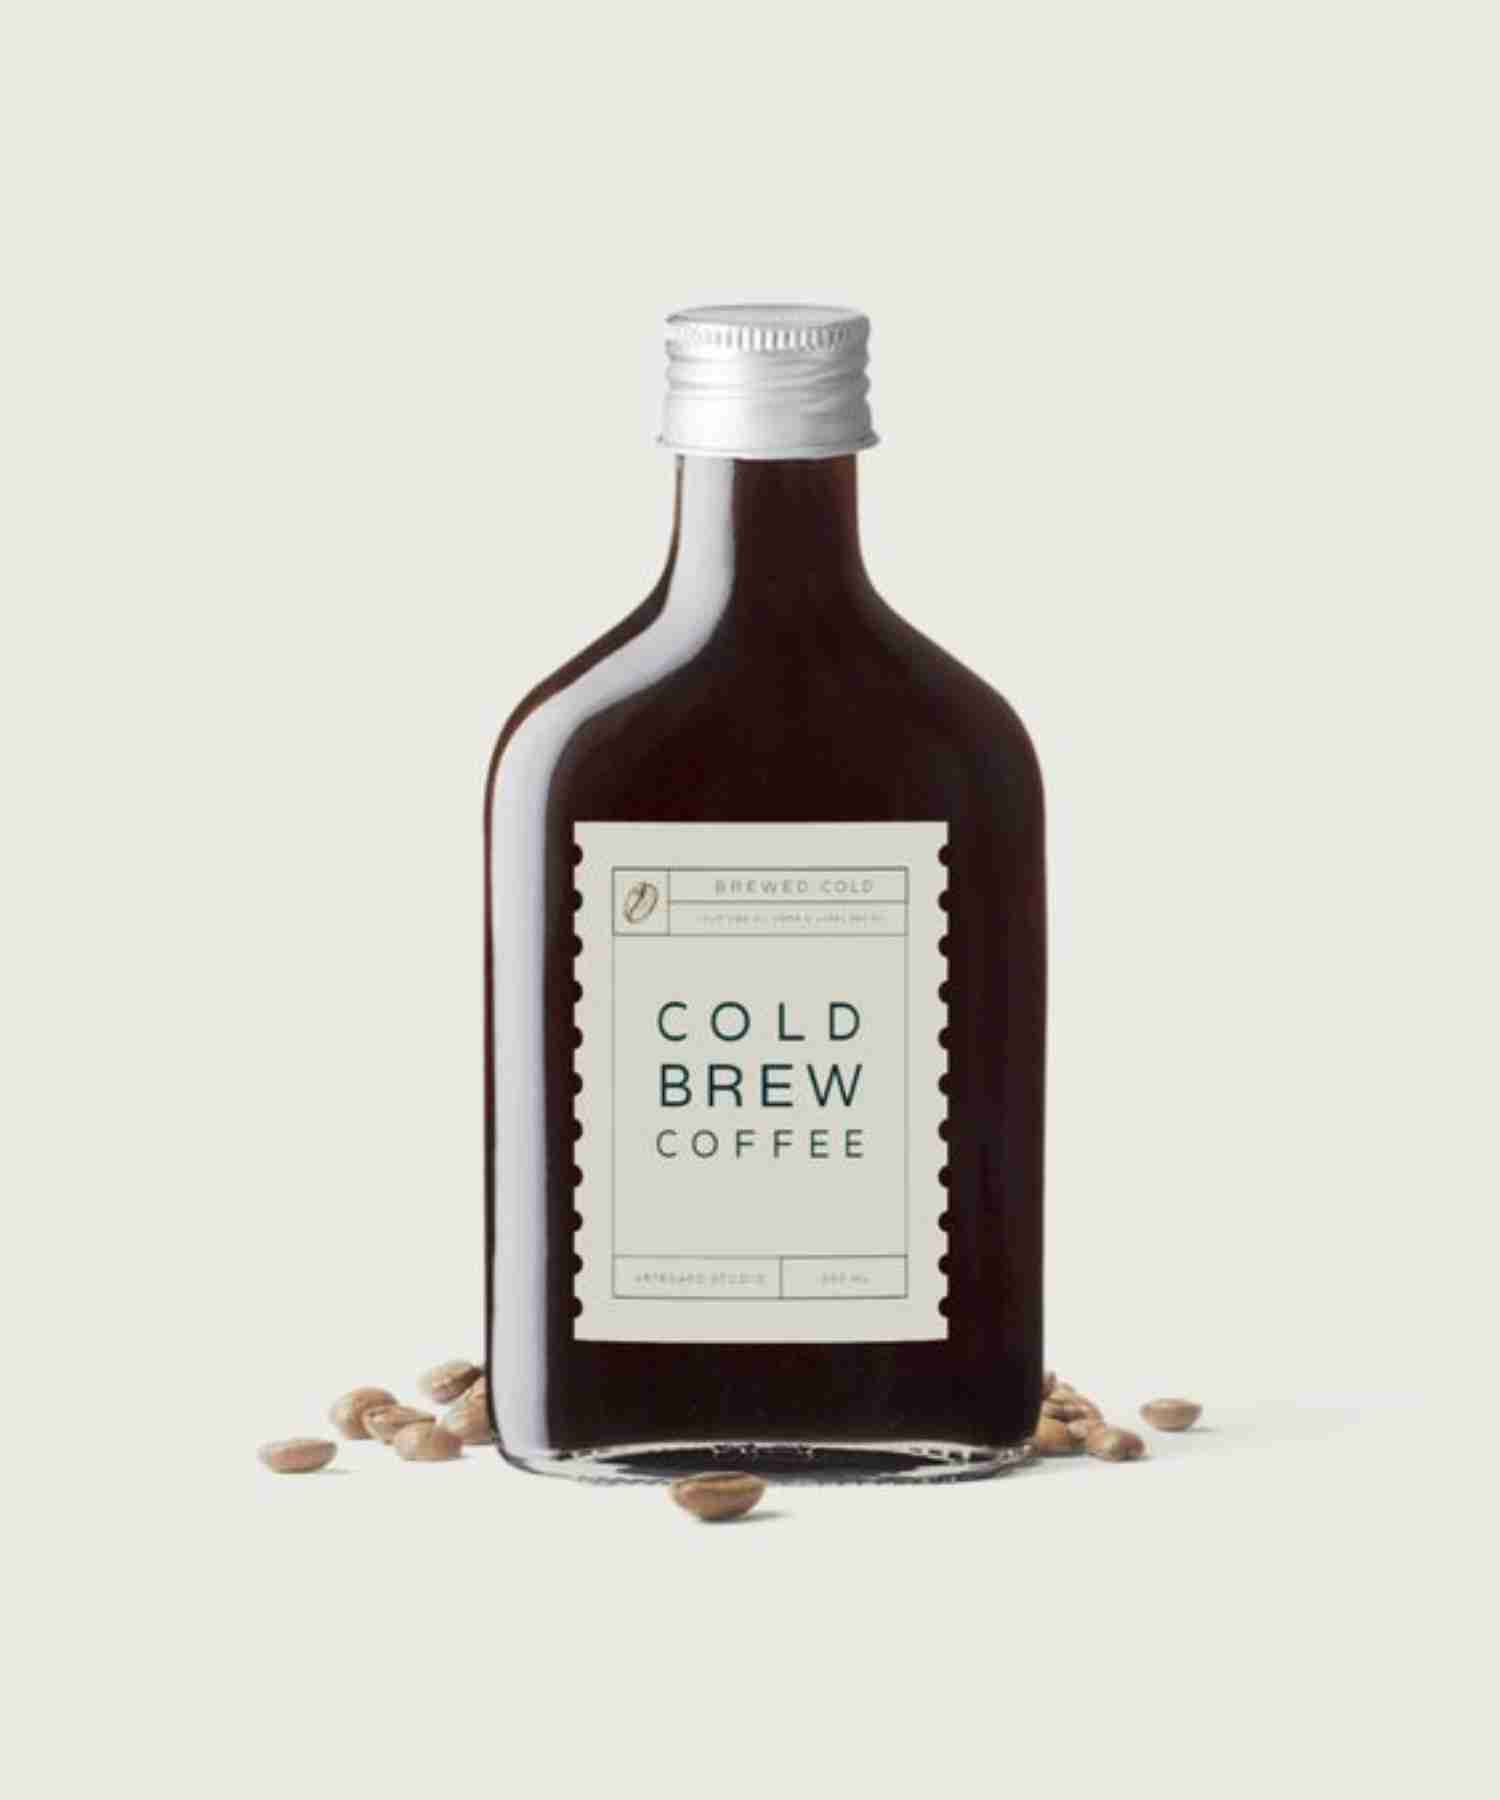 طرز تهیه قهوه کلد برو (Cold Brew Coffee)